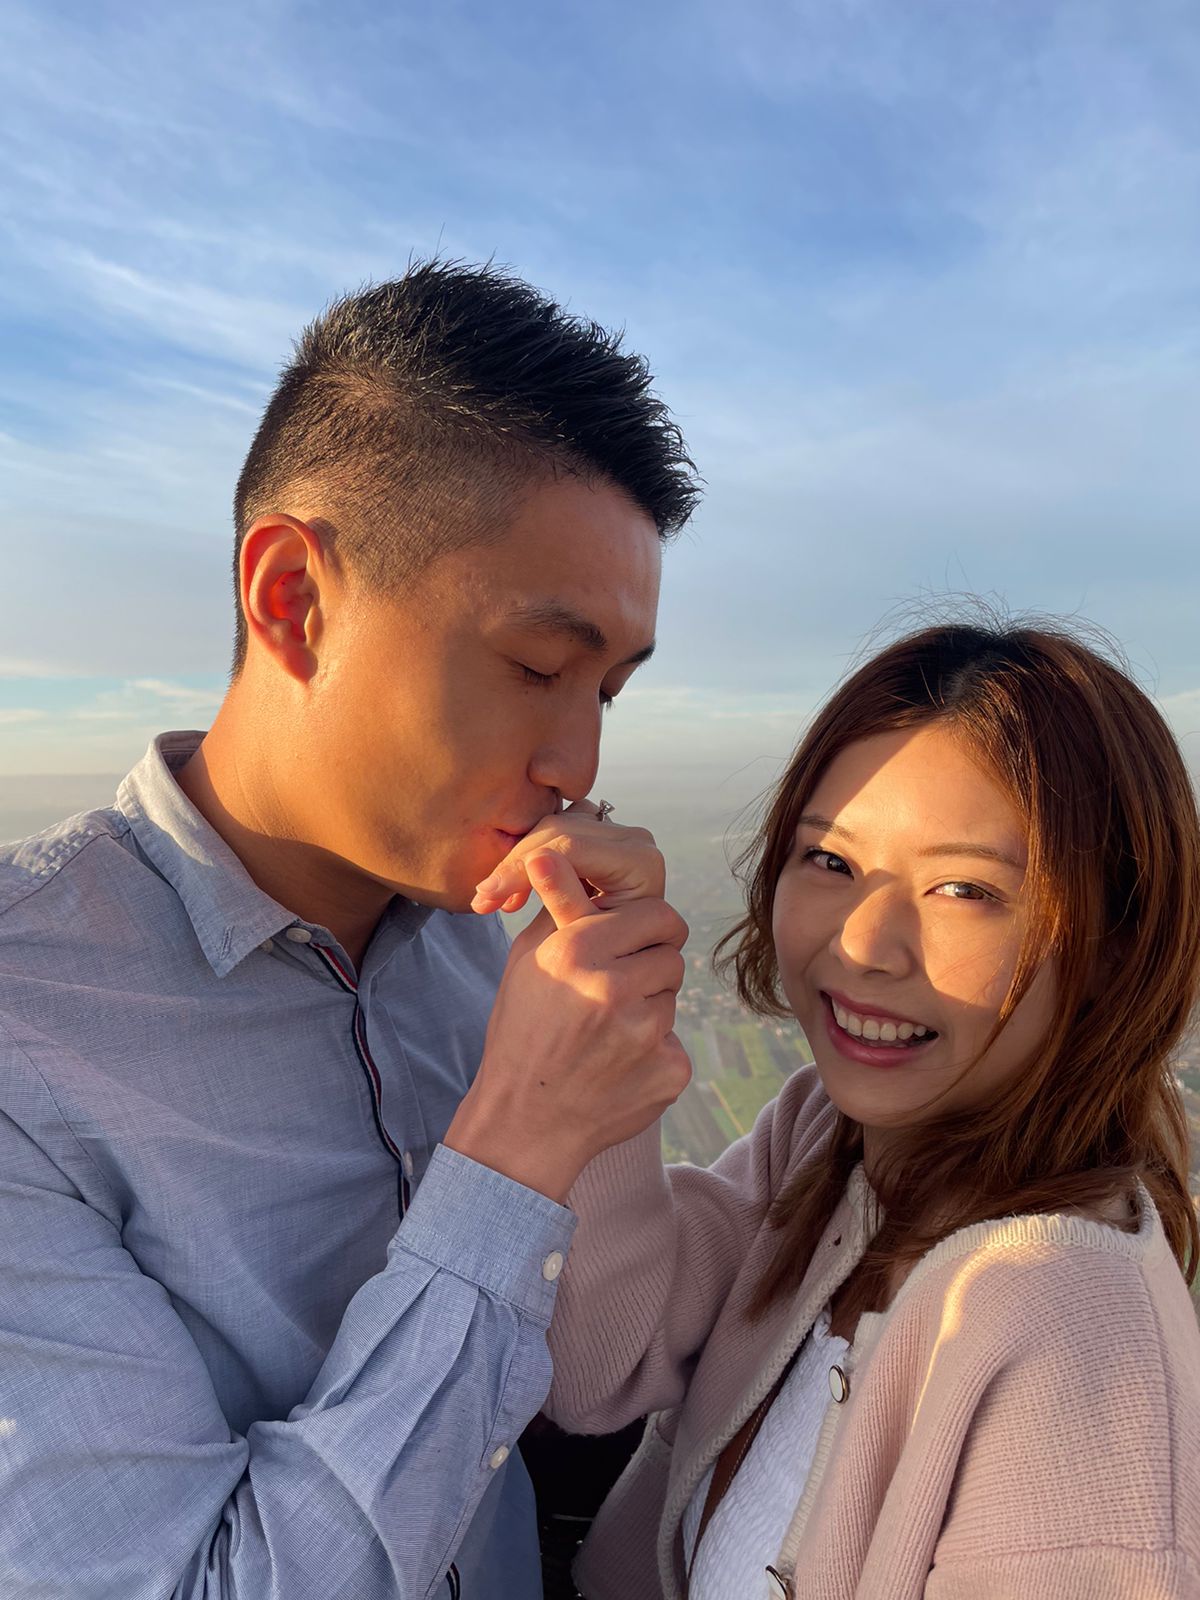 سائح صيني يتقدم للزواج من صديقته على متن رحلة بالون